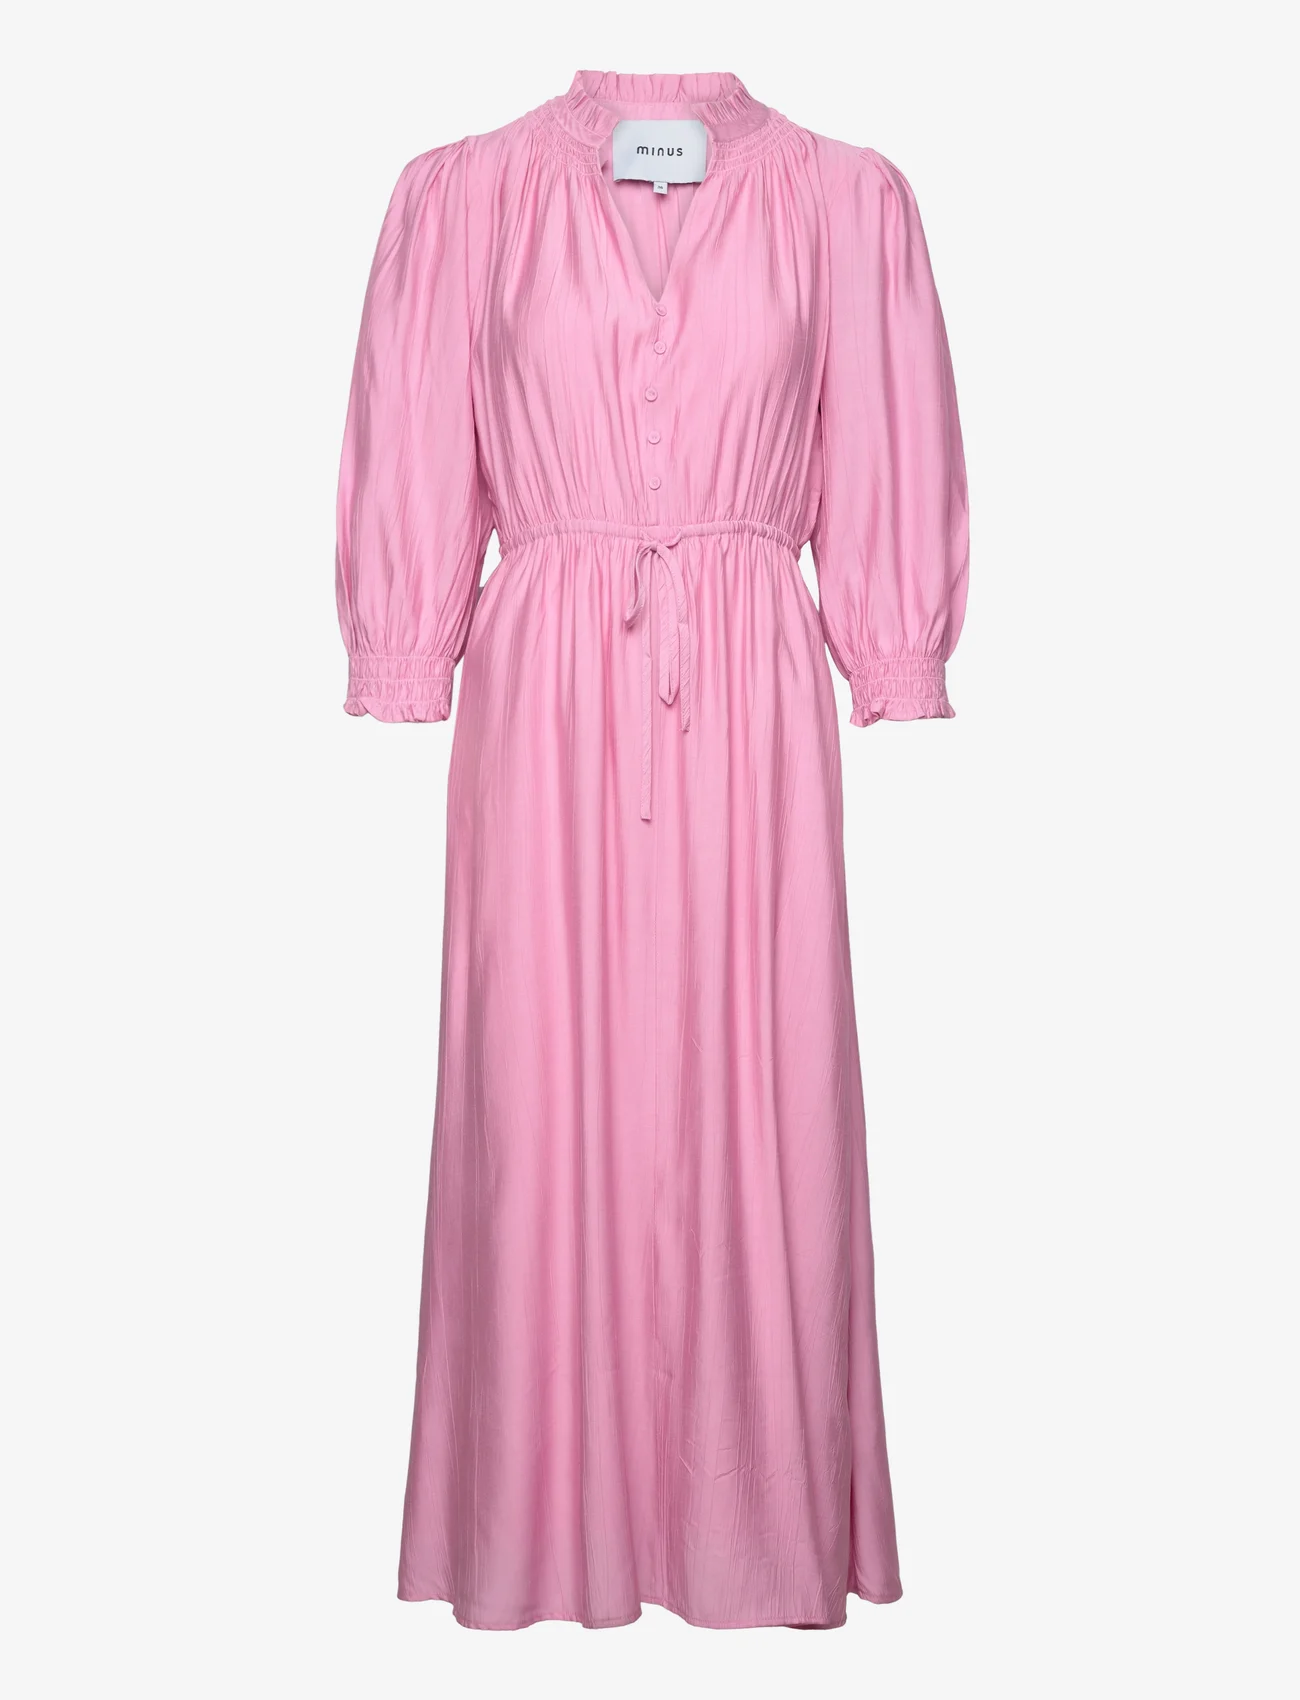 Minus - Salmia Midi Dress 1 - odzież imprezowa w cenach outletowych - super pink - 0